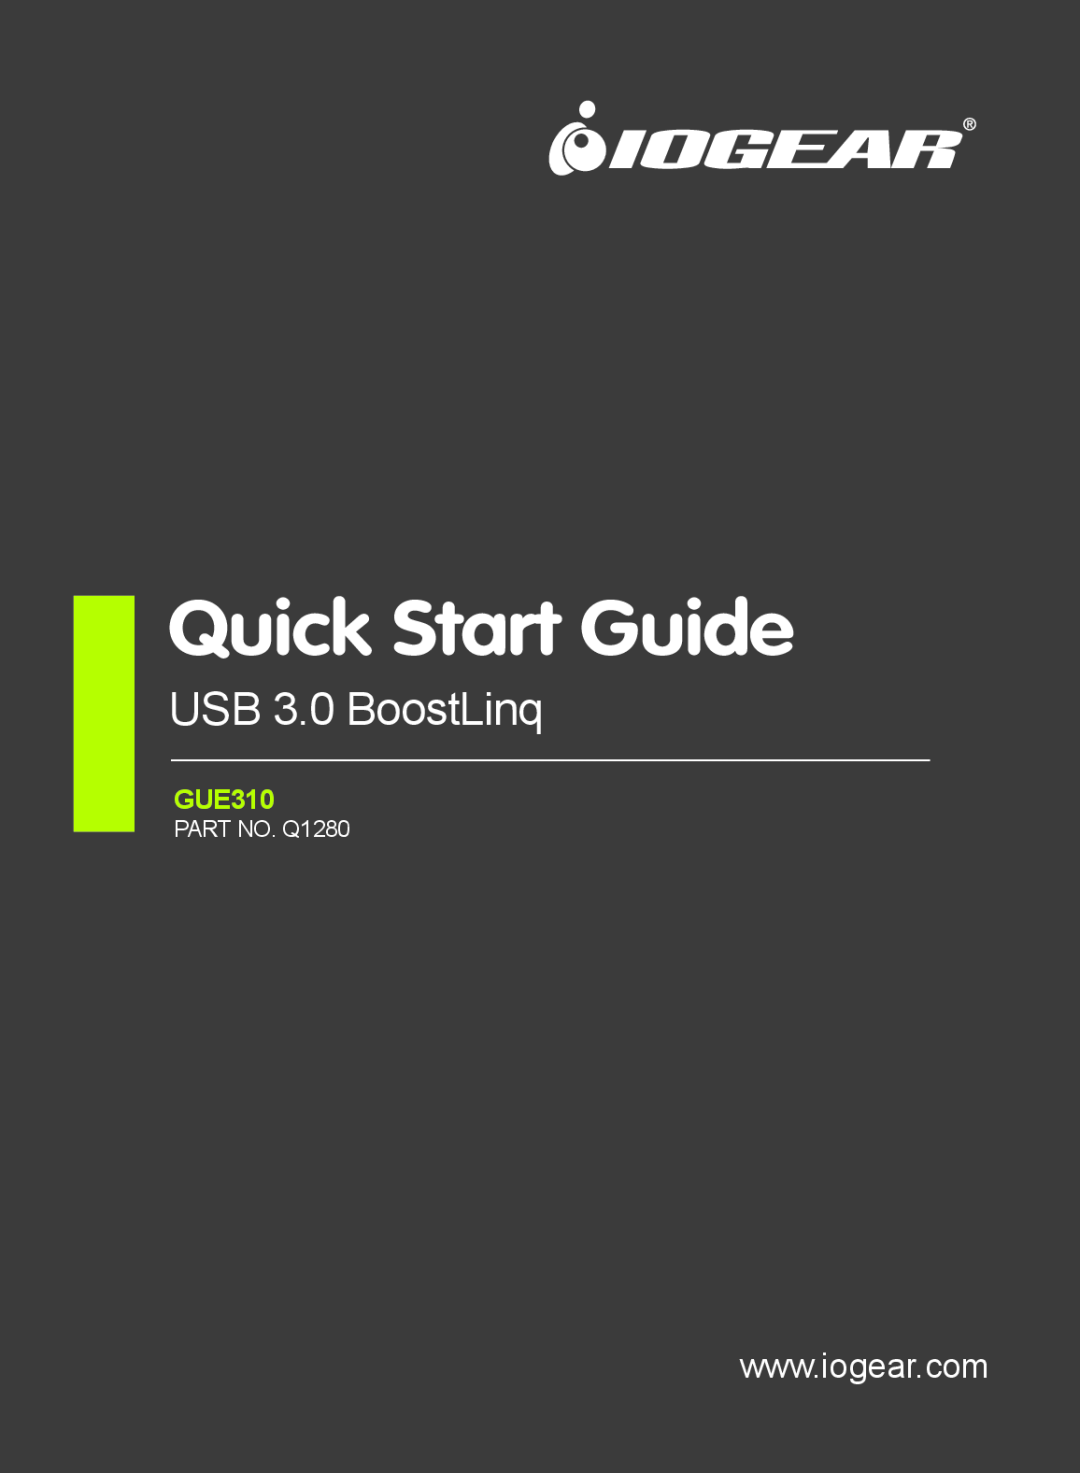 IOGear quick start Quick Start Guide, USB 3.0 BoostLinq, GUE310, PART NO. Q1280 